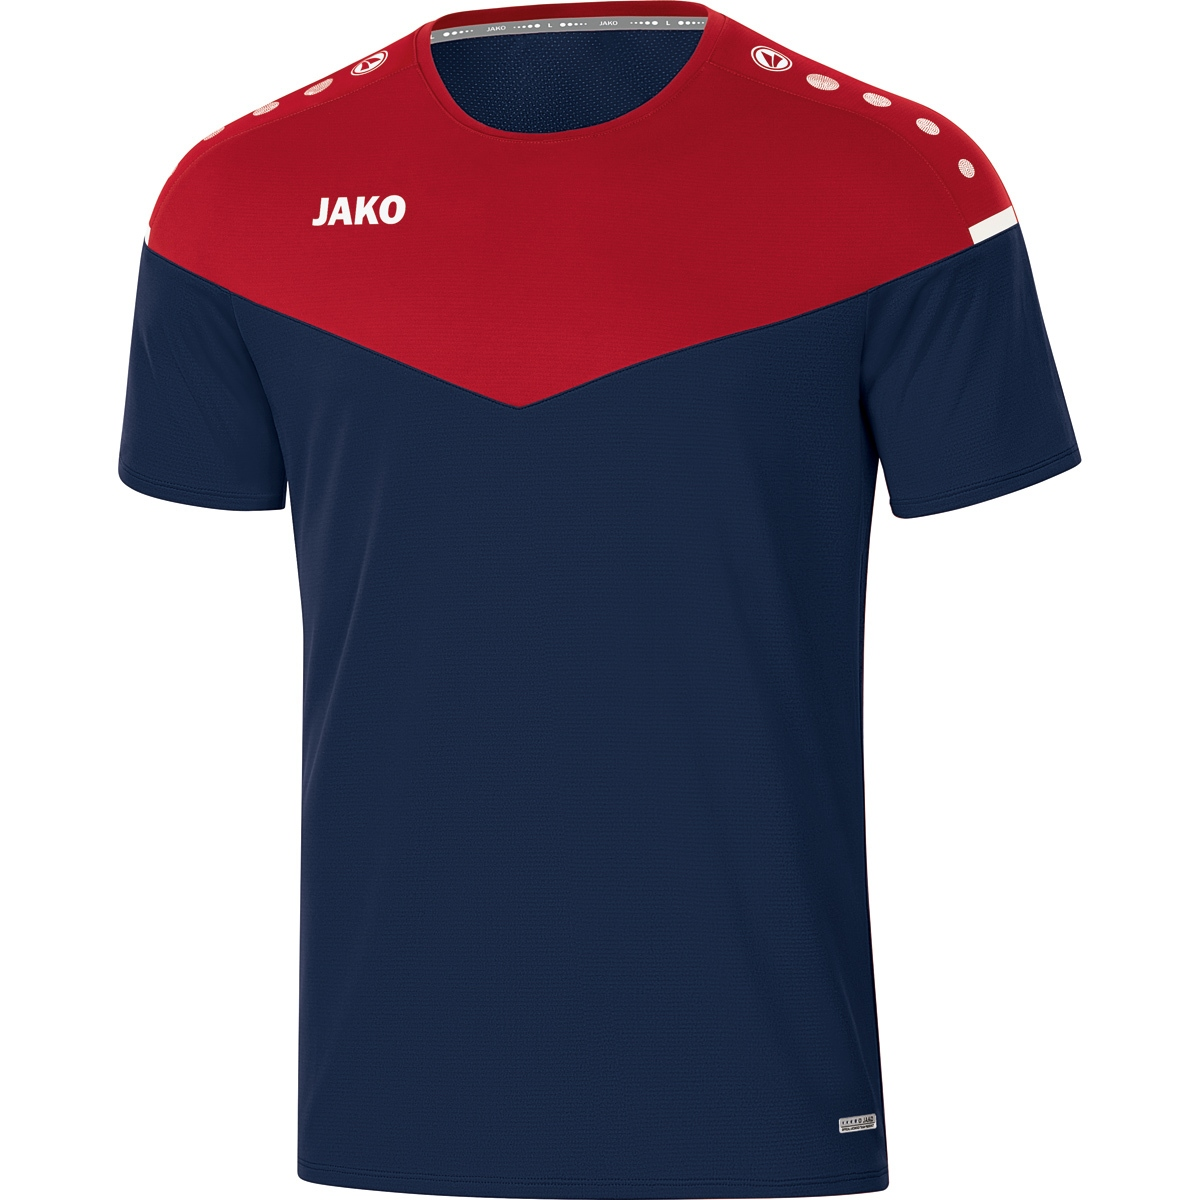 JAKO T-Shirt Champ 6120 2.0 Herren, marine/chili rot, Gr. L